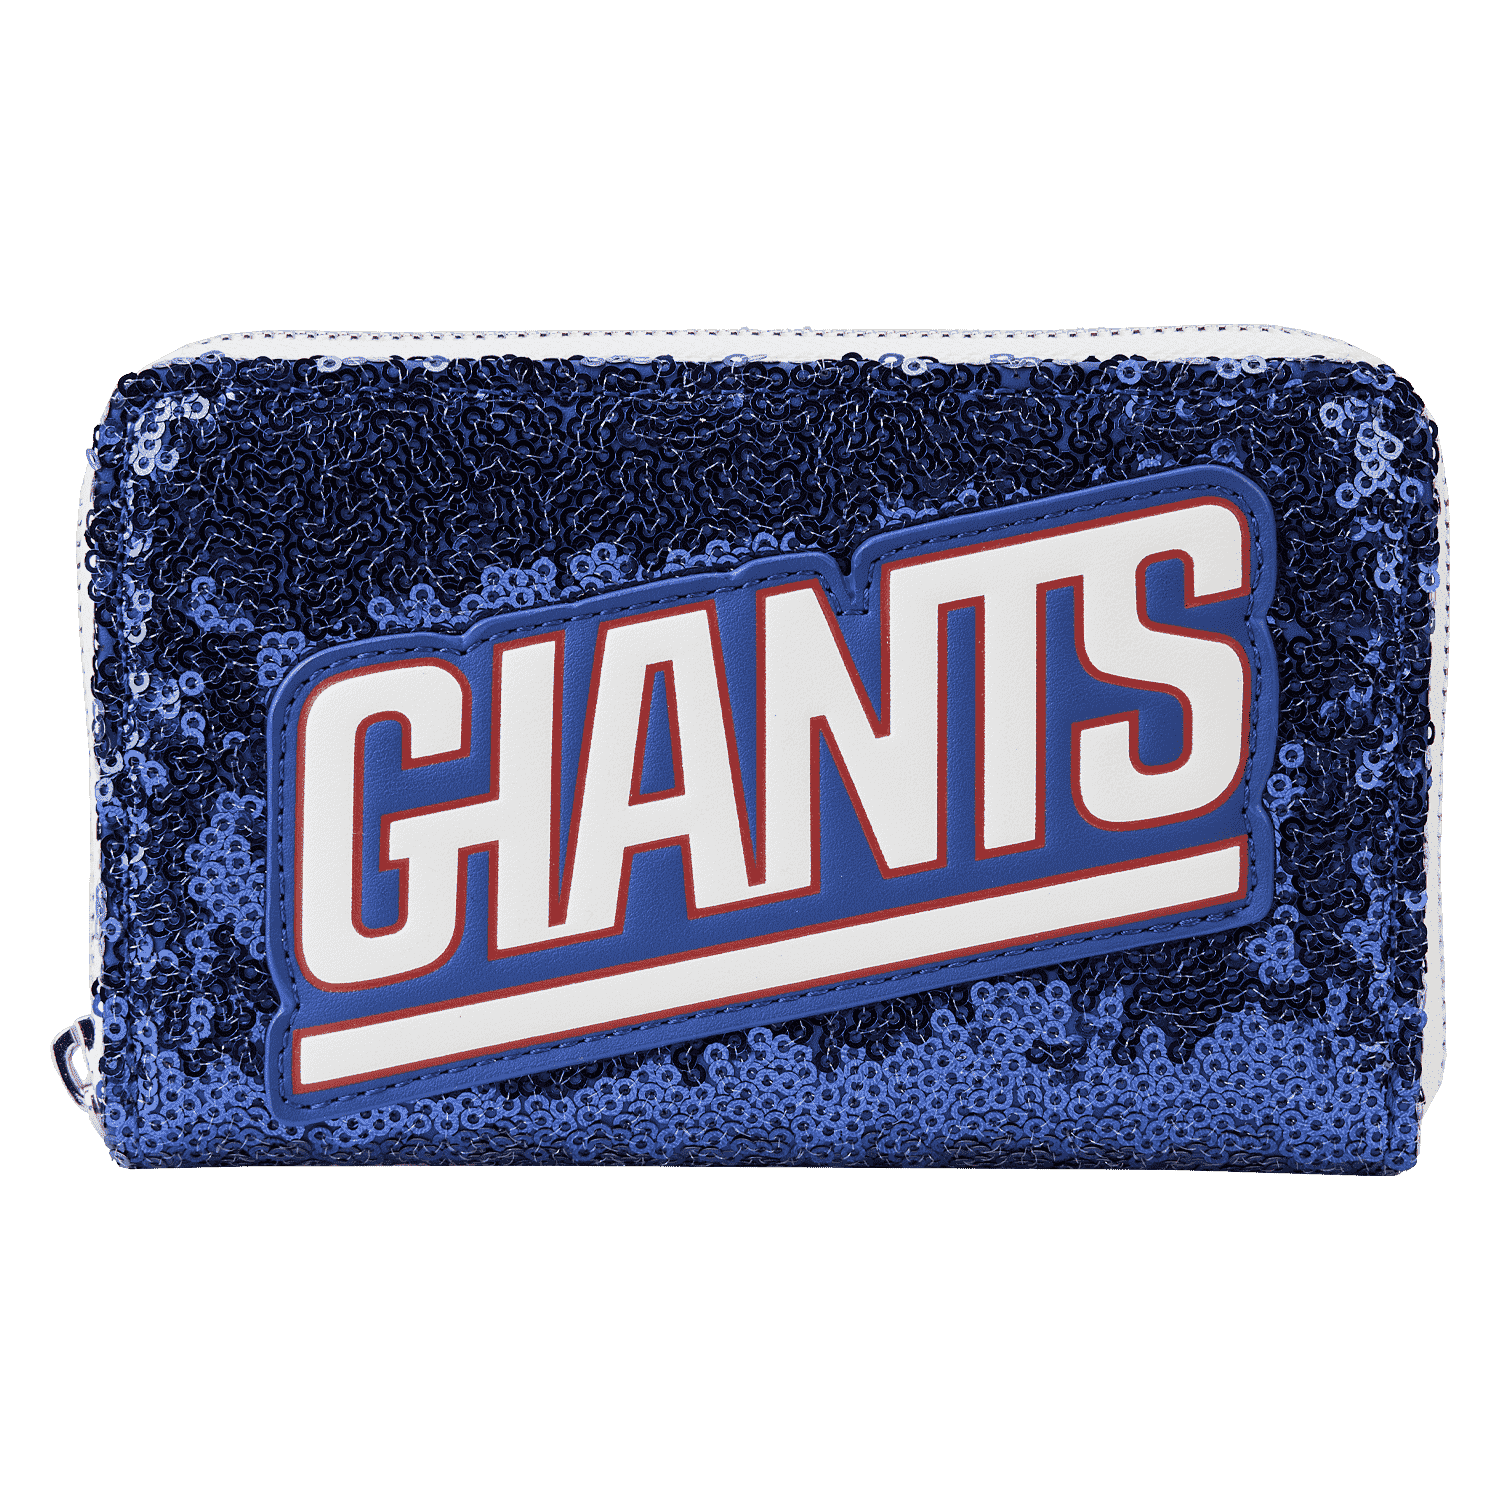 Buy NFL New York Giants Sequin Zip Around Wallet at Loungefly.